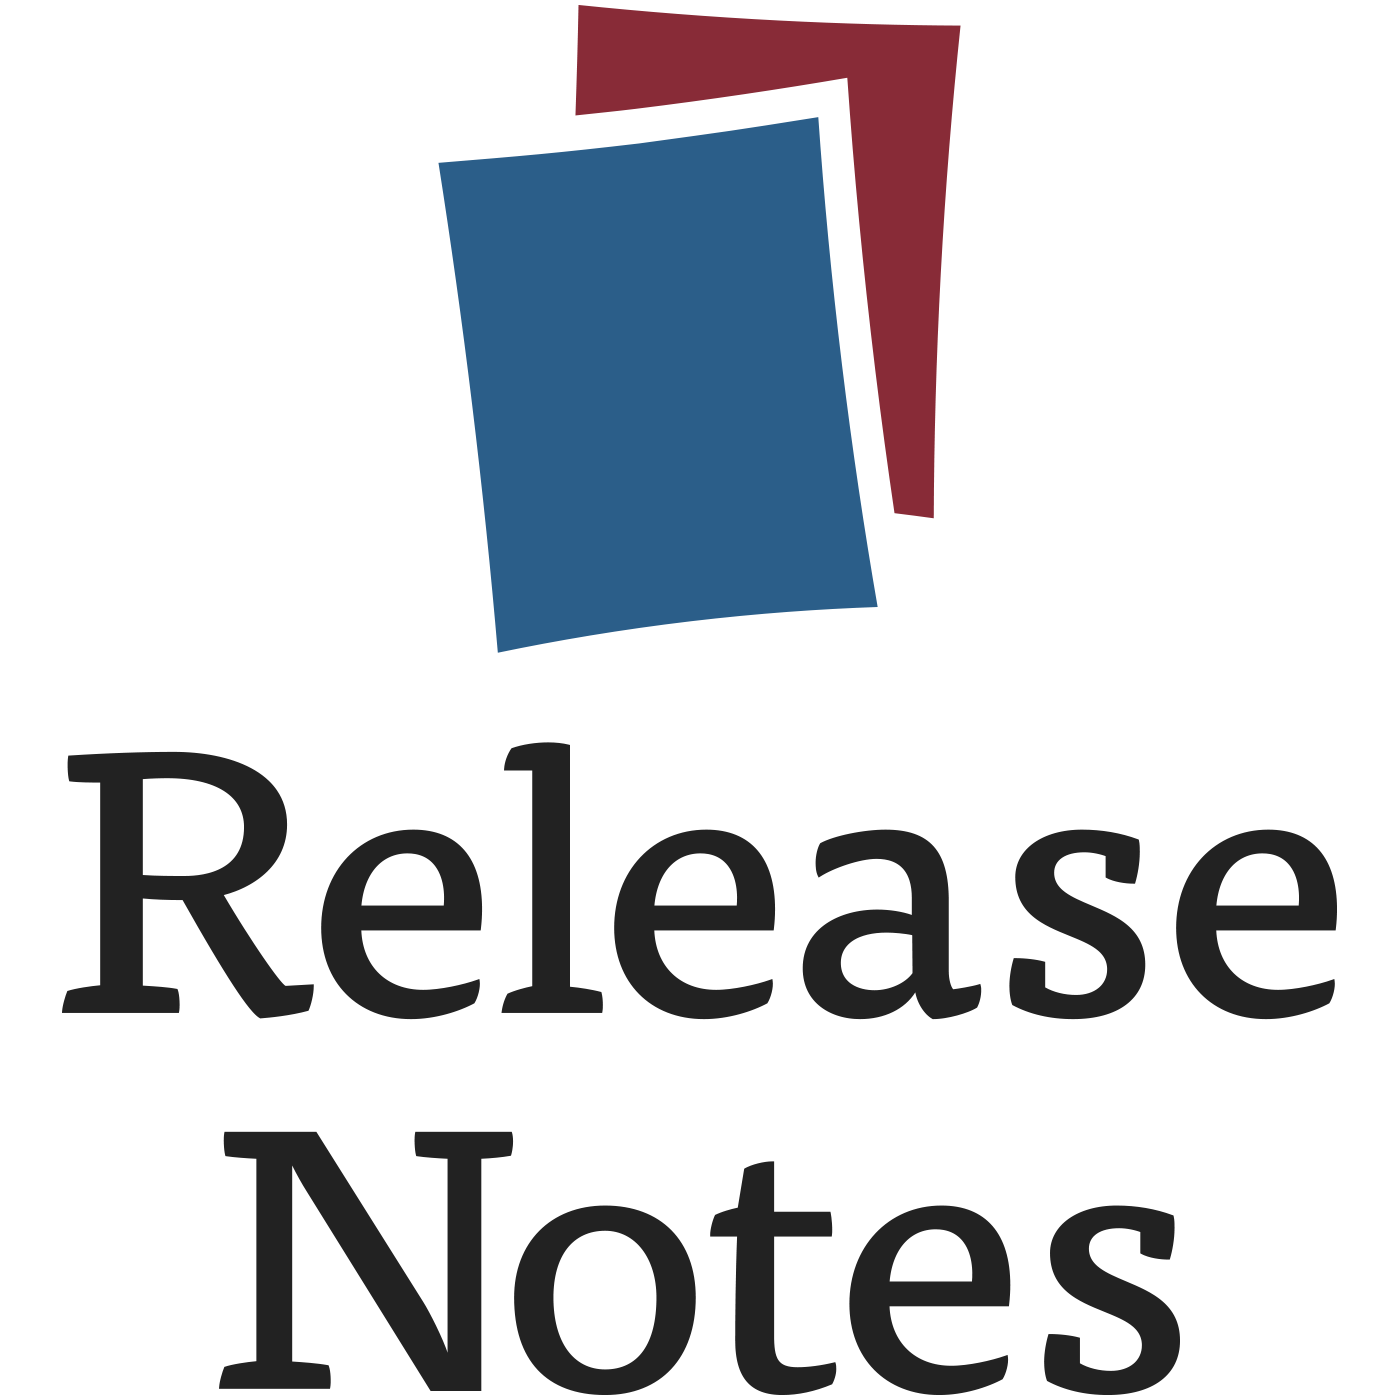 Release Notes. Release Notes logo. Release Notes по. Good Notes логотип.